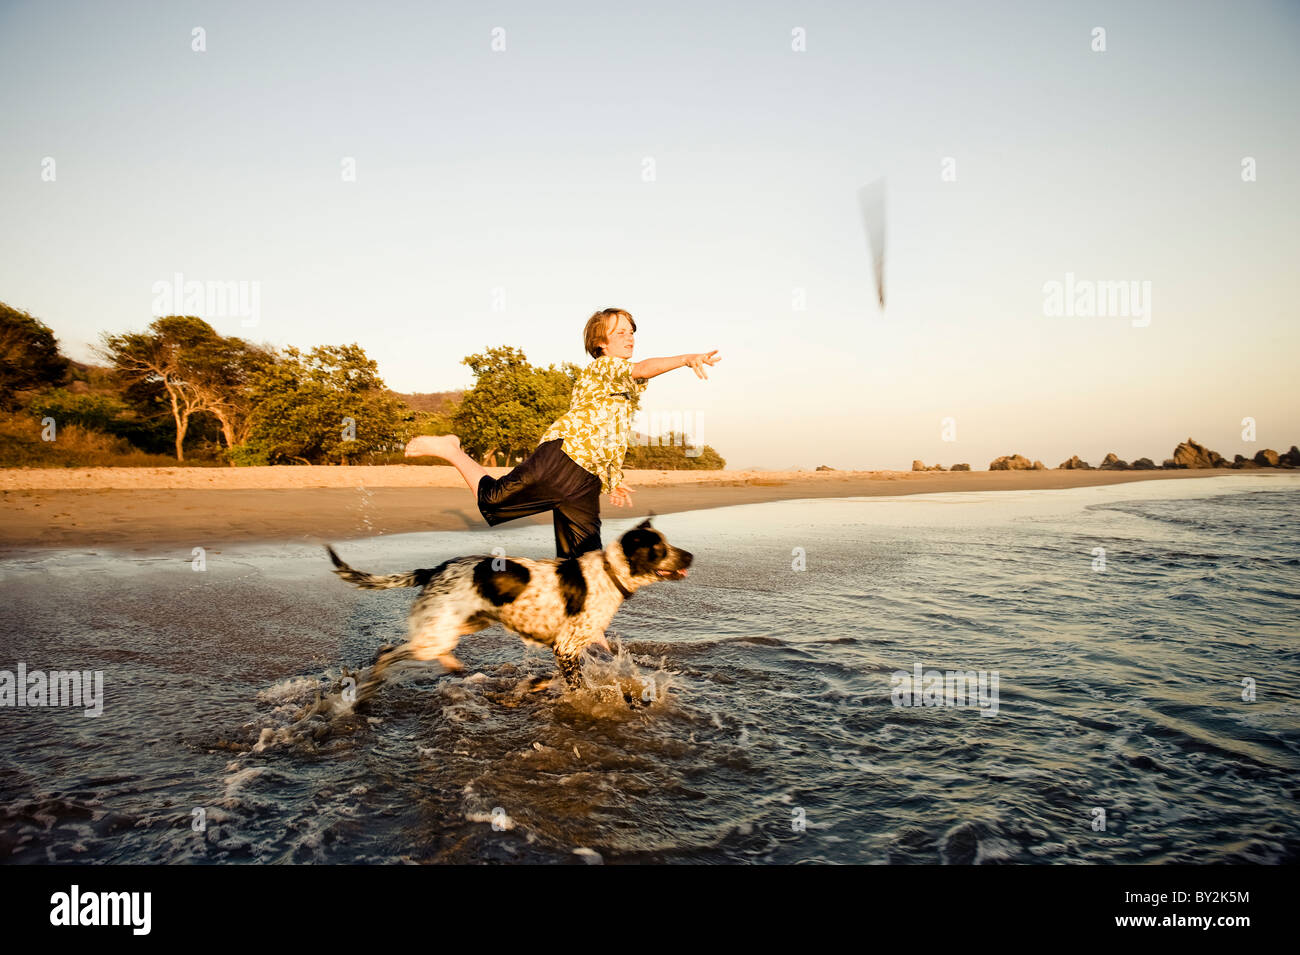 Un jeune garçon joue fetch avec son chien, au coucher du soleil sur une plage au Mexique. Banque D'Images